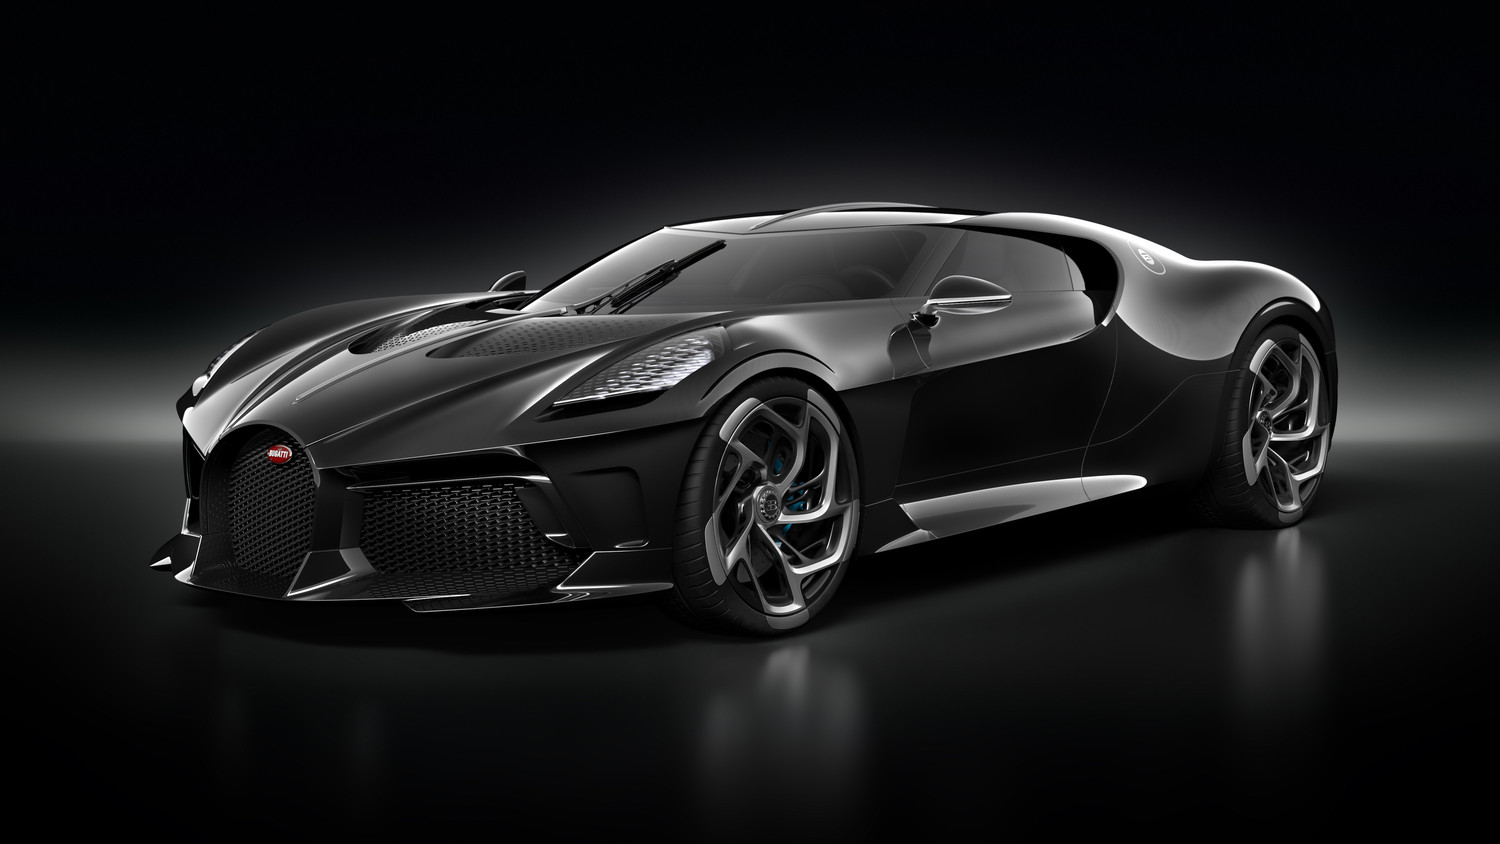 Bugatti La Voiture Noire - абсолютная элегантность и самый дорогой новый автомобиль за всю историю